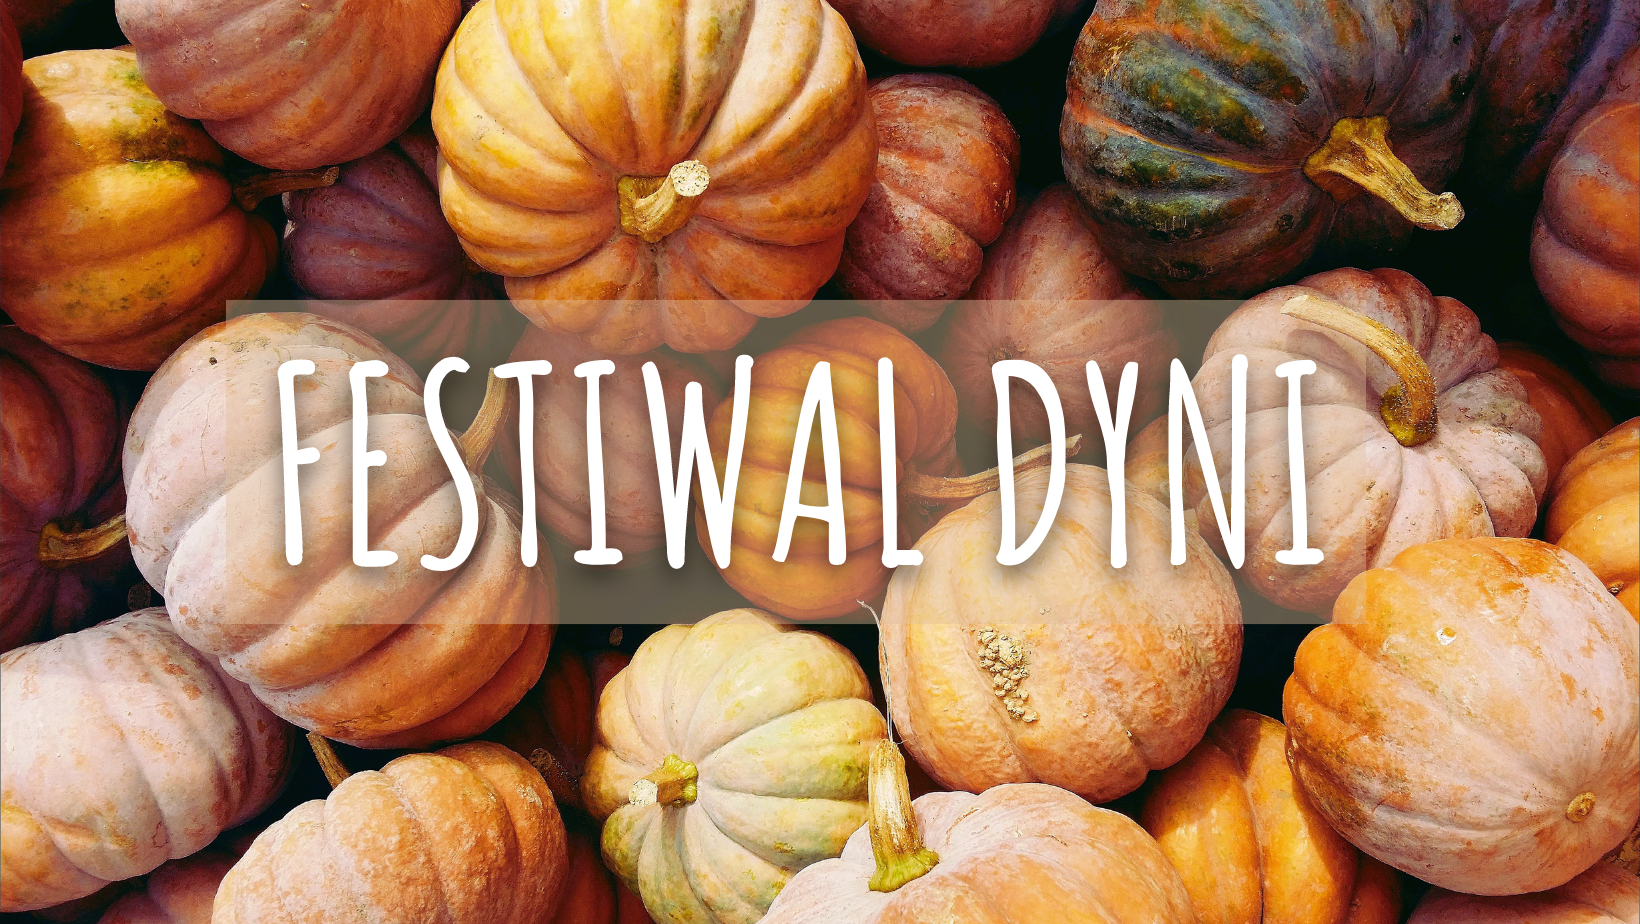 Festiwal dyni